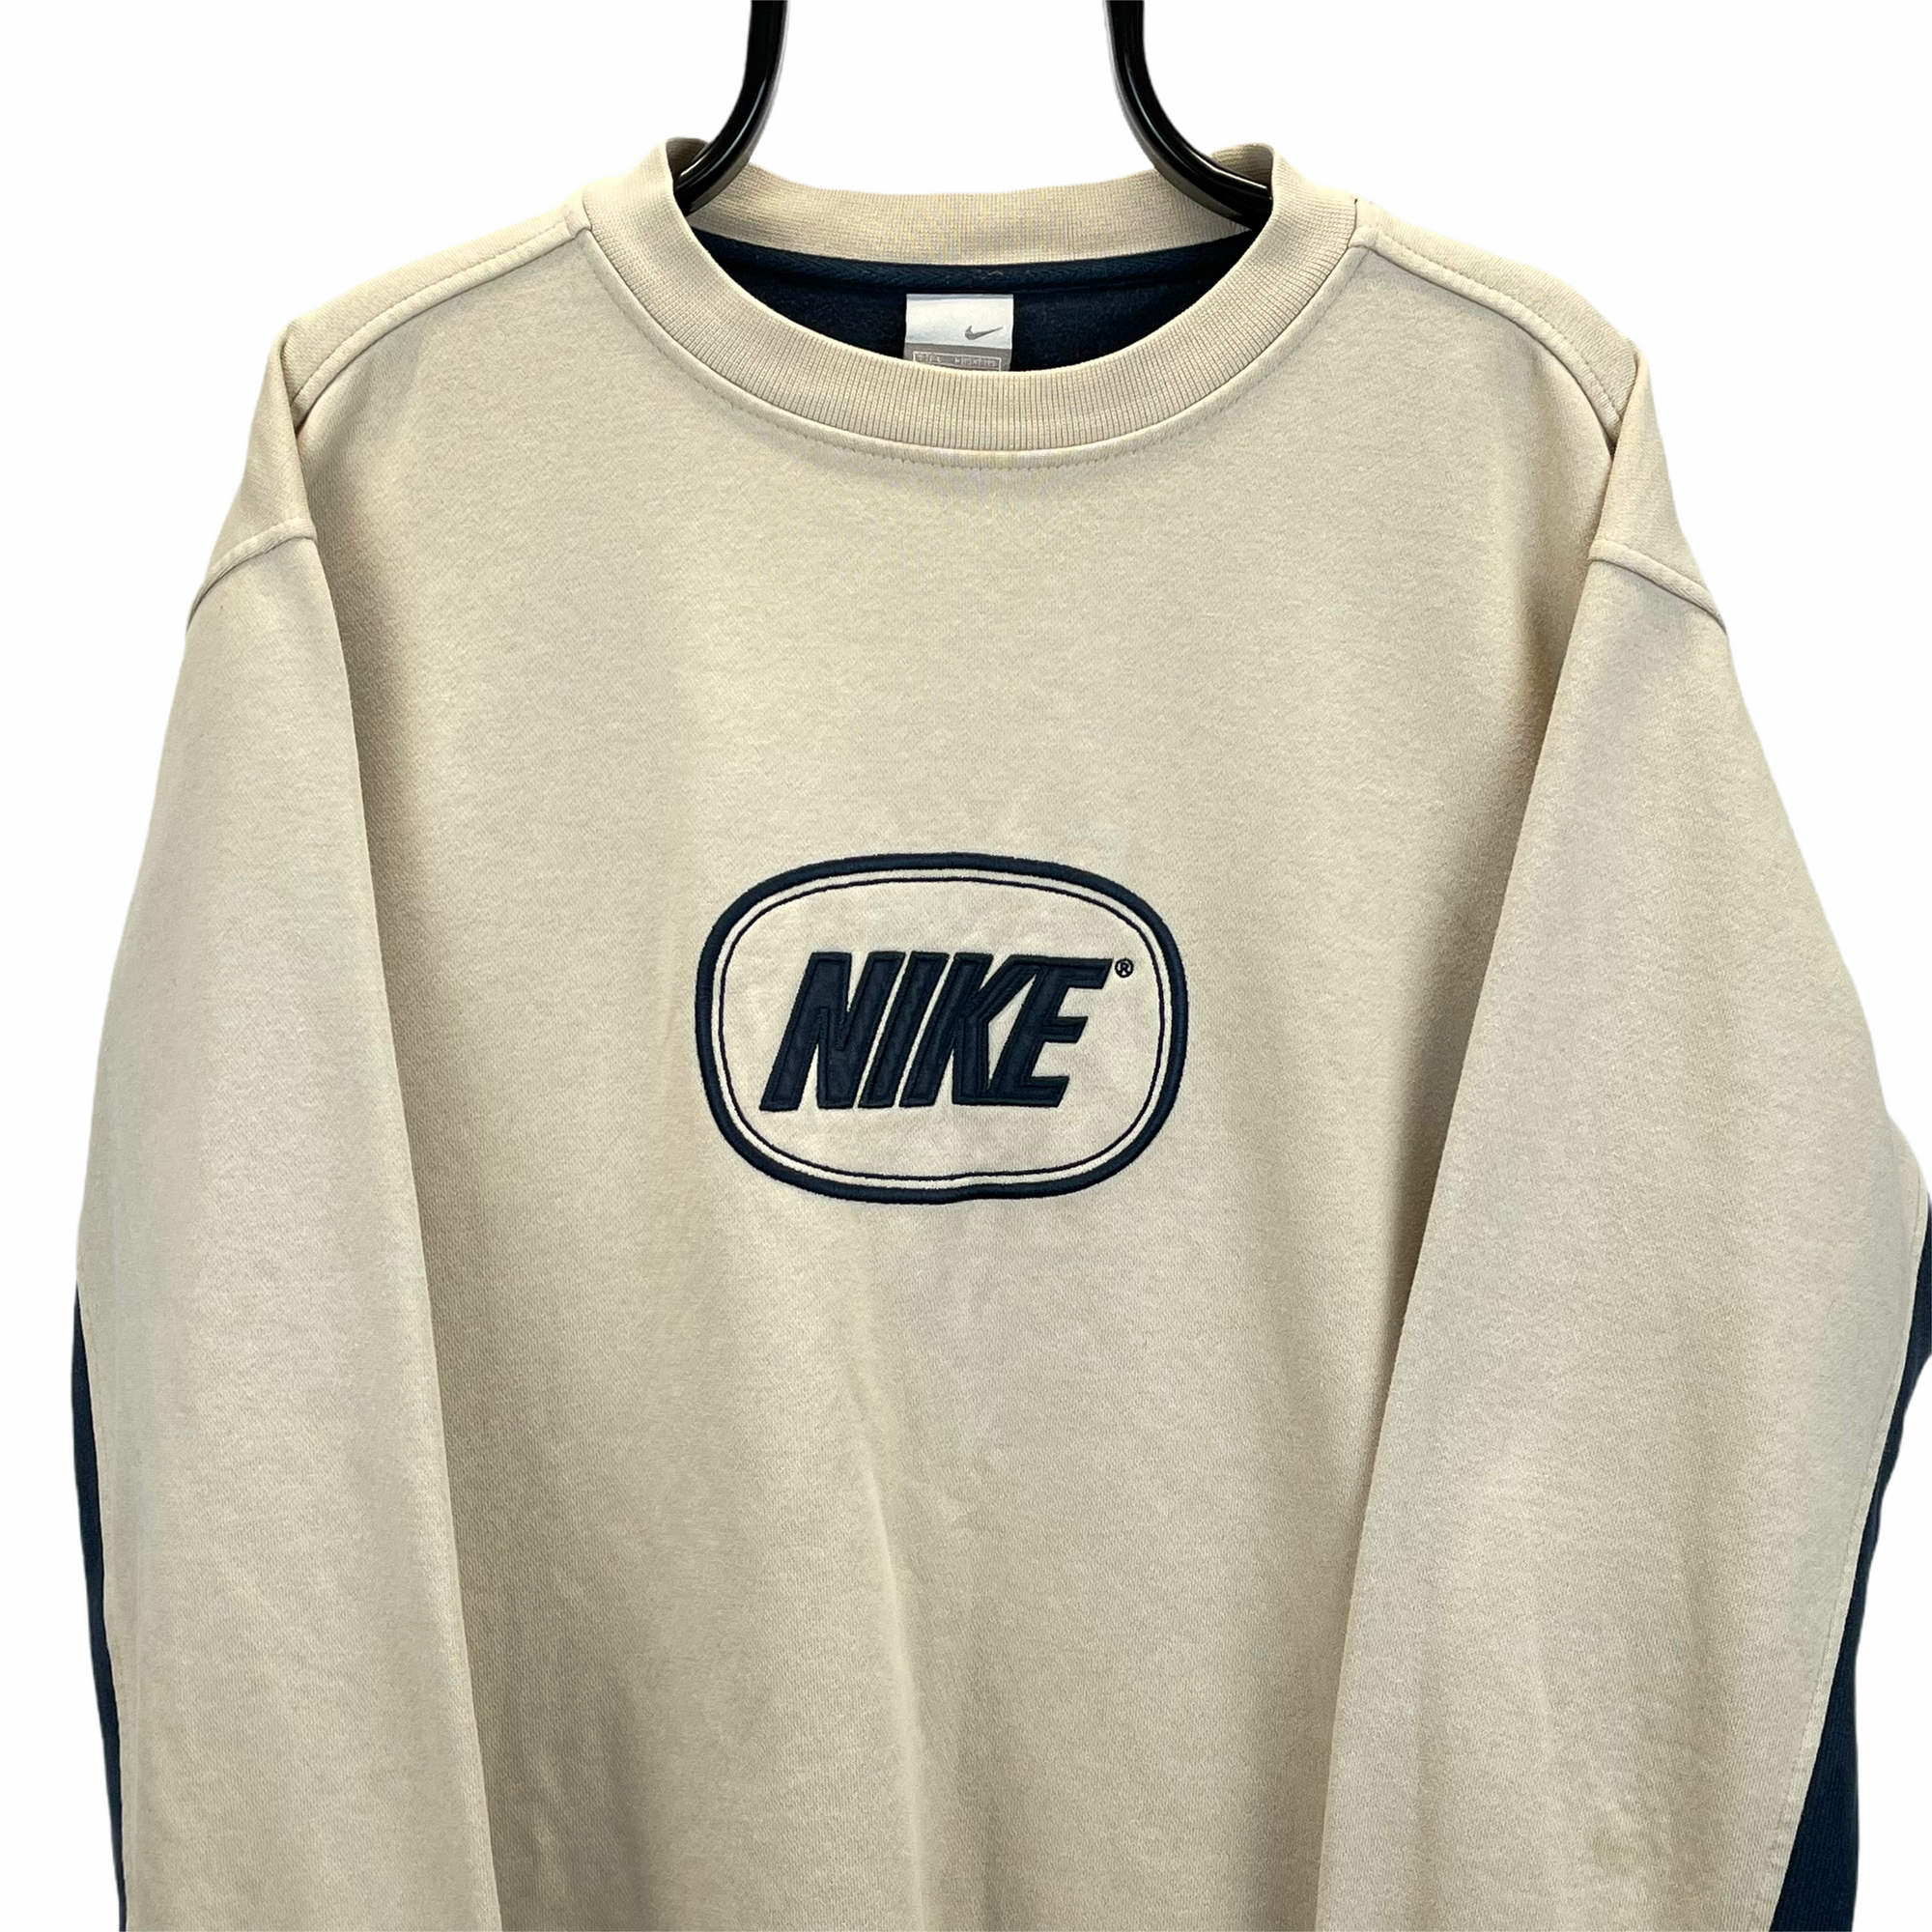 Vintage Nike Spellout Sweatshirt in Beige - Men's Large/Women's XL